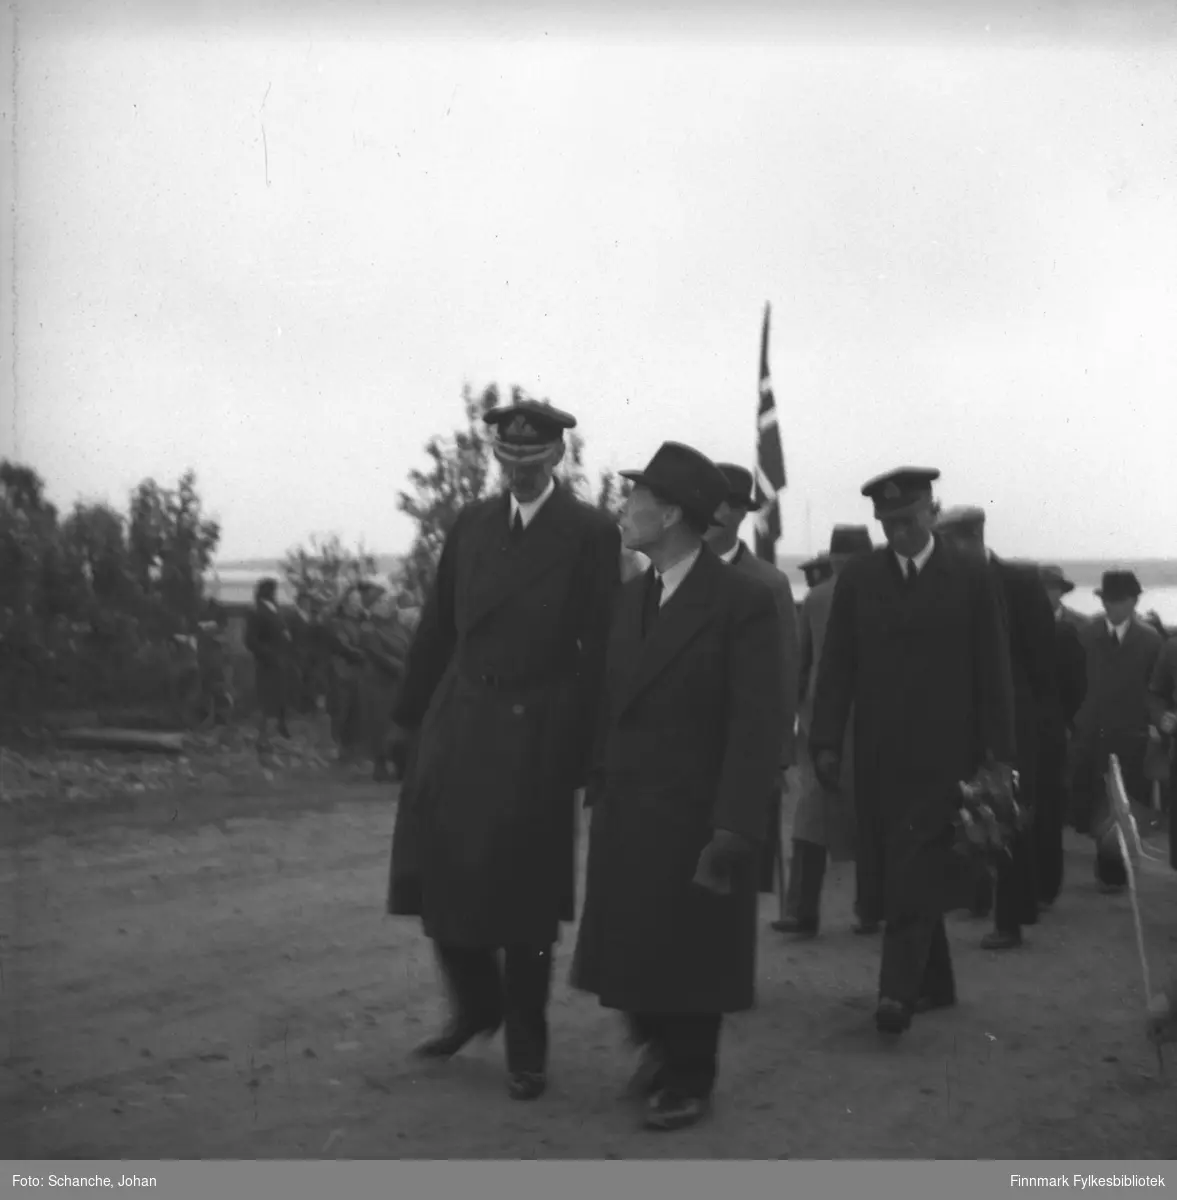 Kong Haakons besøk i Vadsø i 1946. Kong Haakon VII, fylkesmann Hans Gabrielsen og adjutant kommandørkaptein Bruusgaard  (med blomsterbukett i hand) går langs gata i Vadsø. Folkemengde på vegkanten.